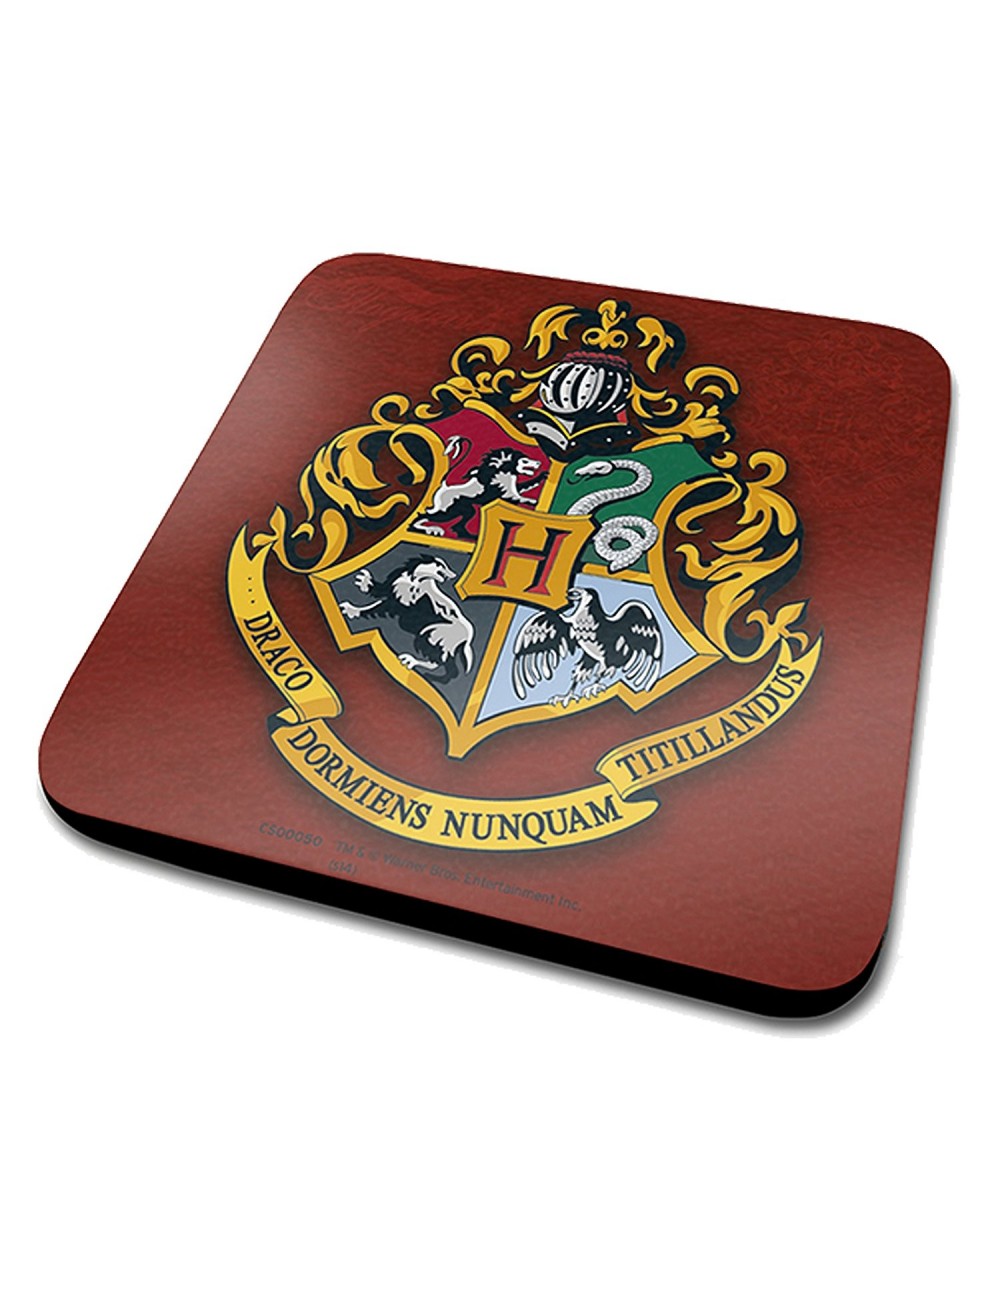 Suport pahare Harry Potter Hogwarts Crest